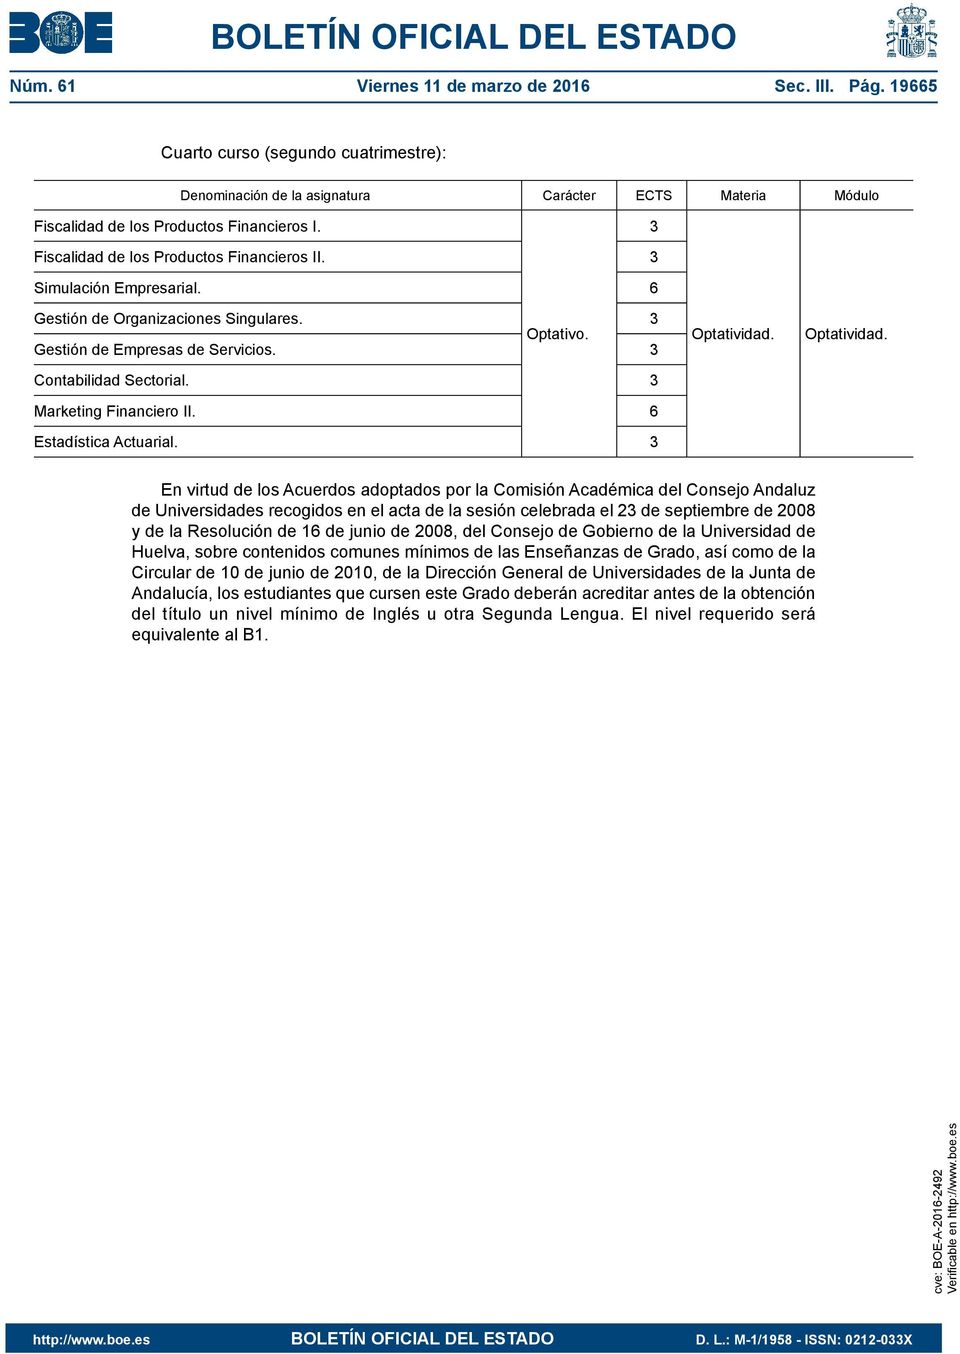 3 En virtud de los Acuerdos adoptados por la Comisión Académica del Consejo Andaluz de Universidades recogidos en el acta de la sesión celebrada el 23 de septiembre de 2008 y de la Resolución de 16